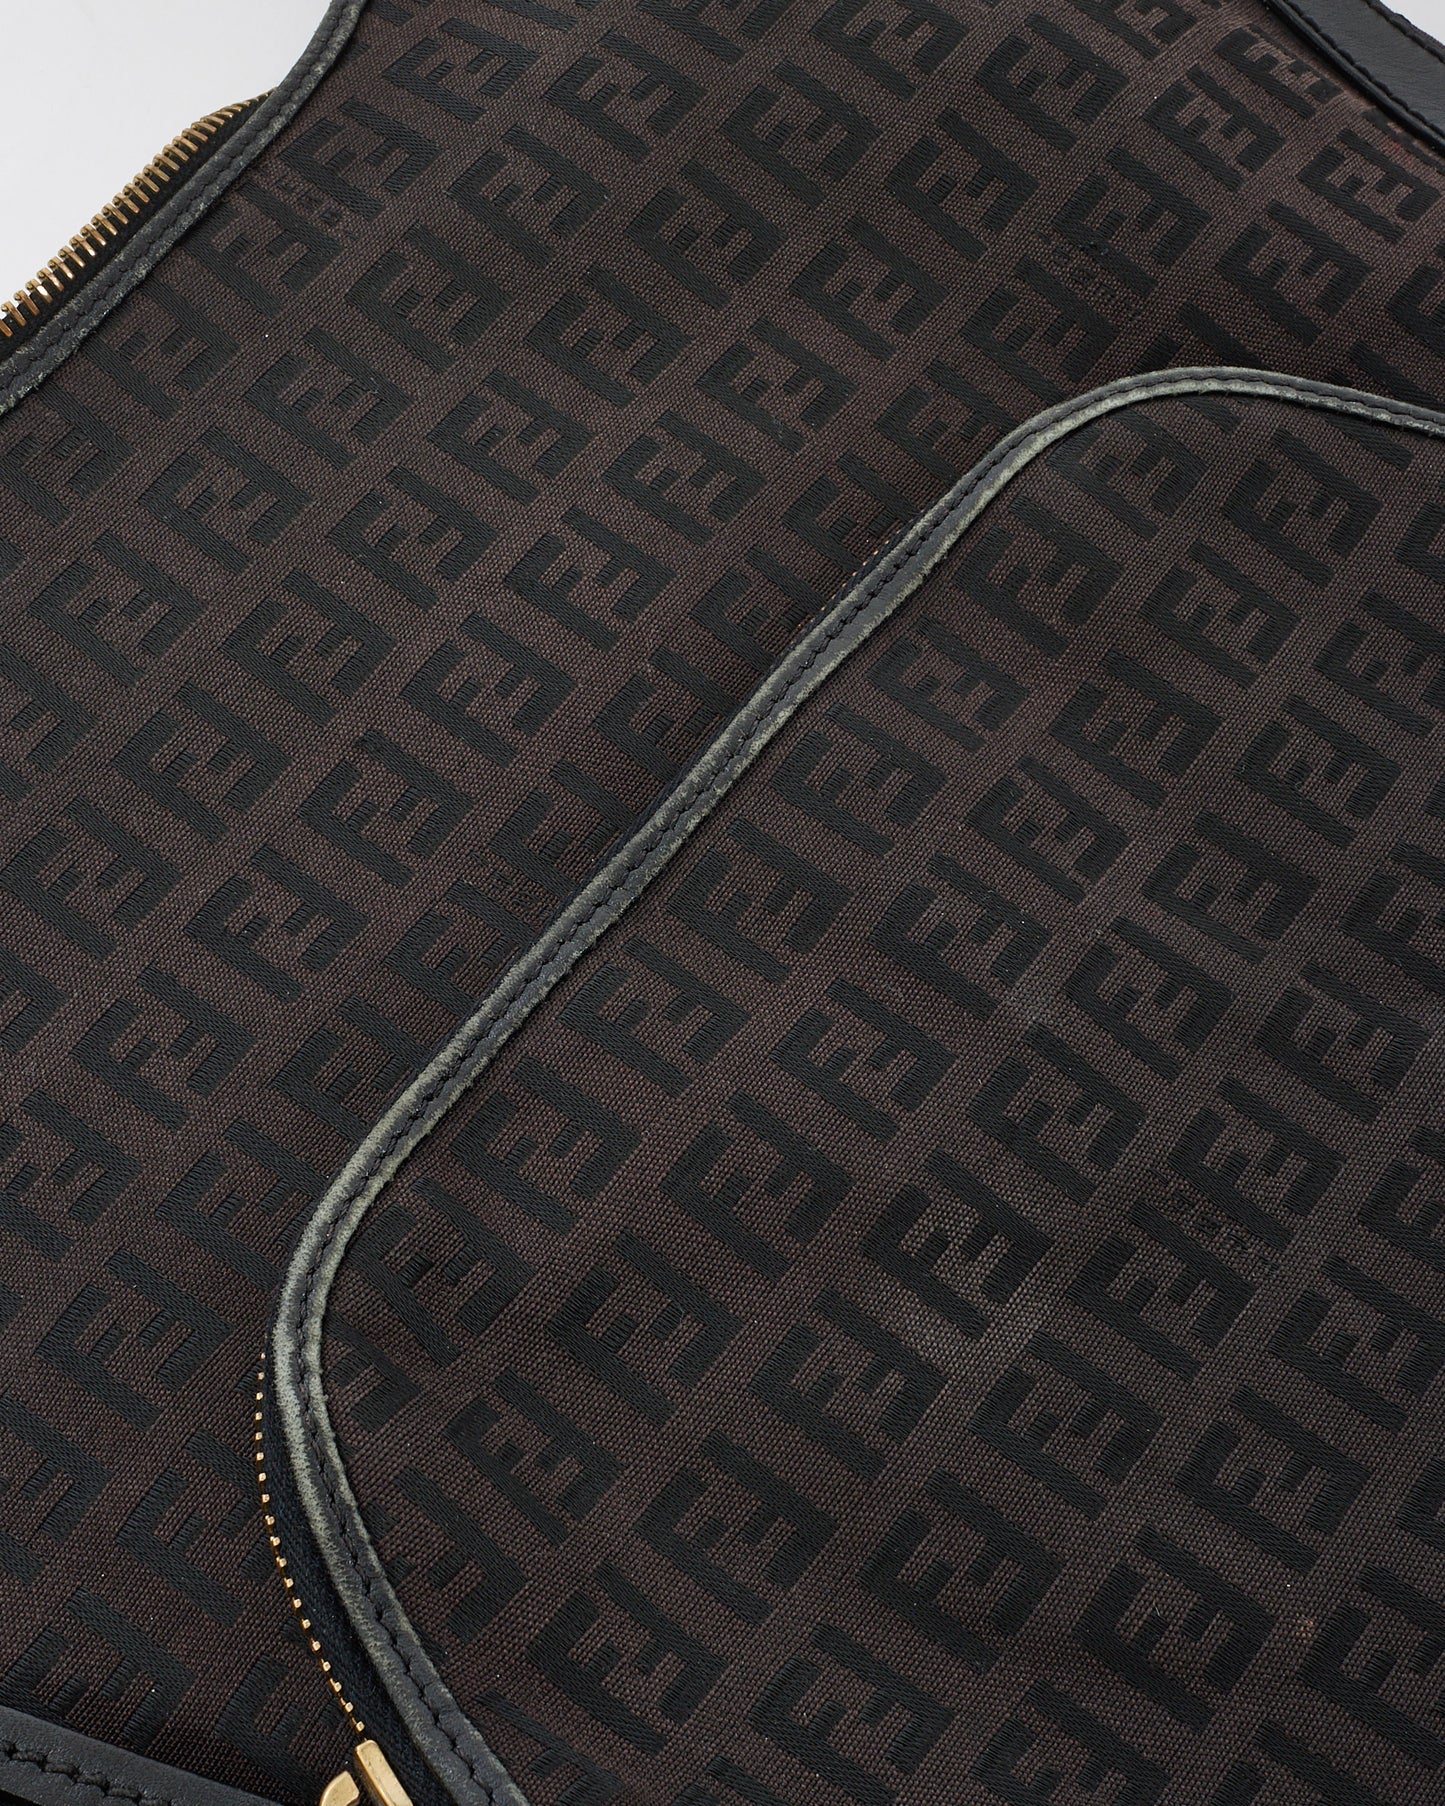 Fendi Sac à bandoulière Hobo en toile imprimée courgettes marron et noir